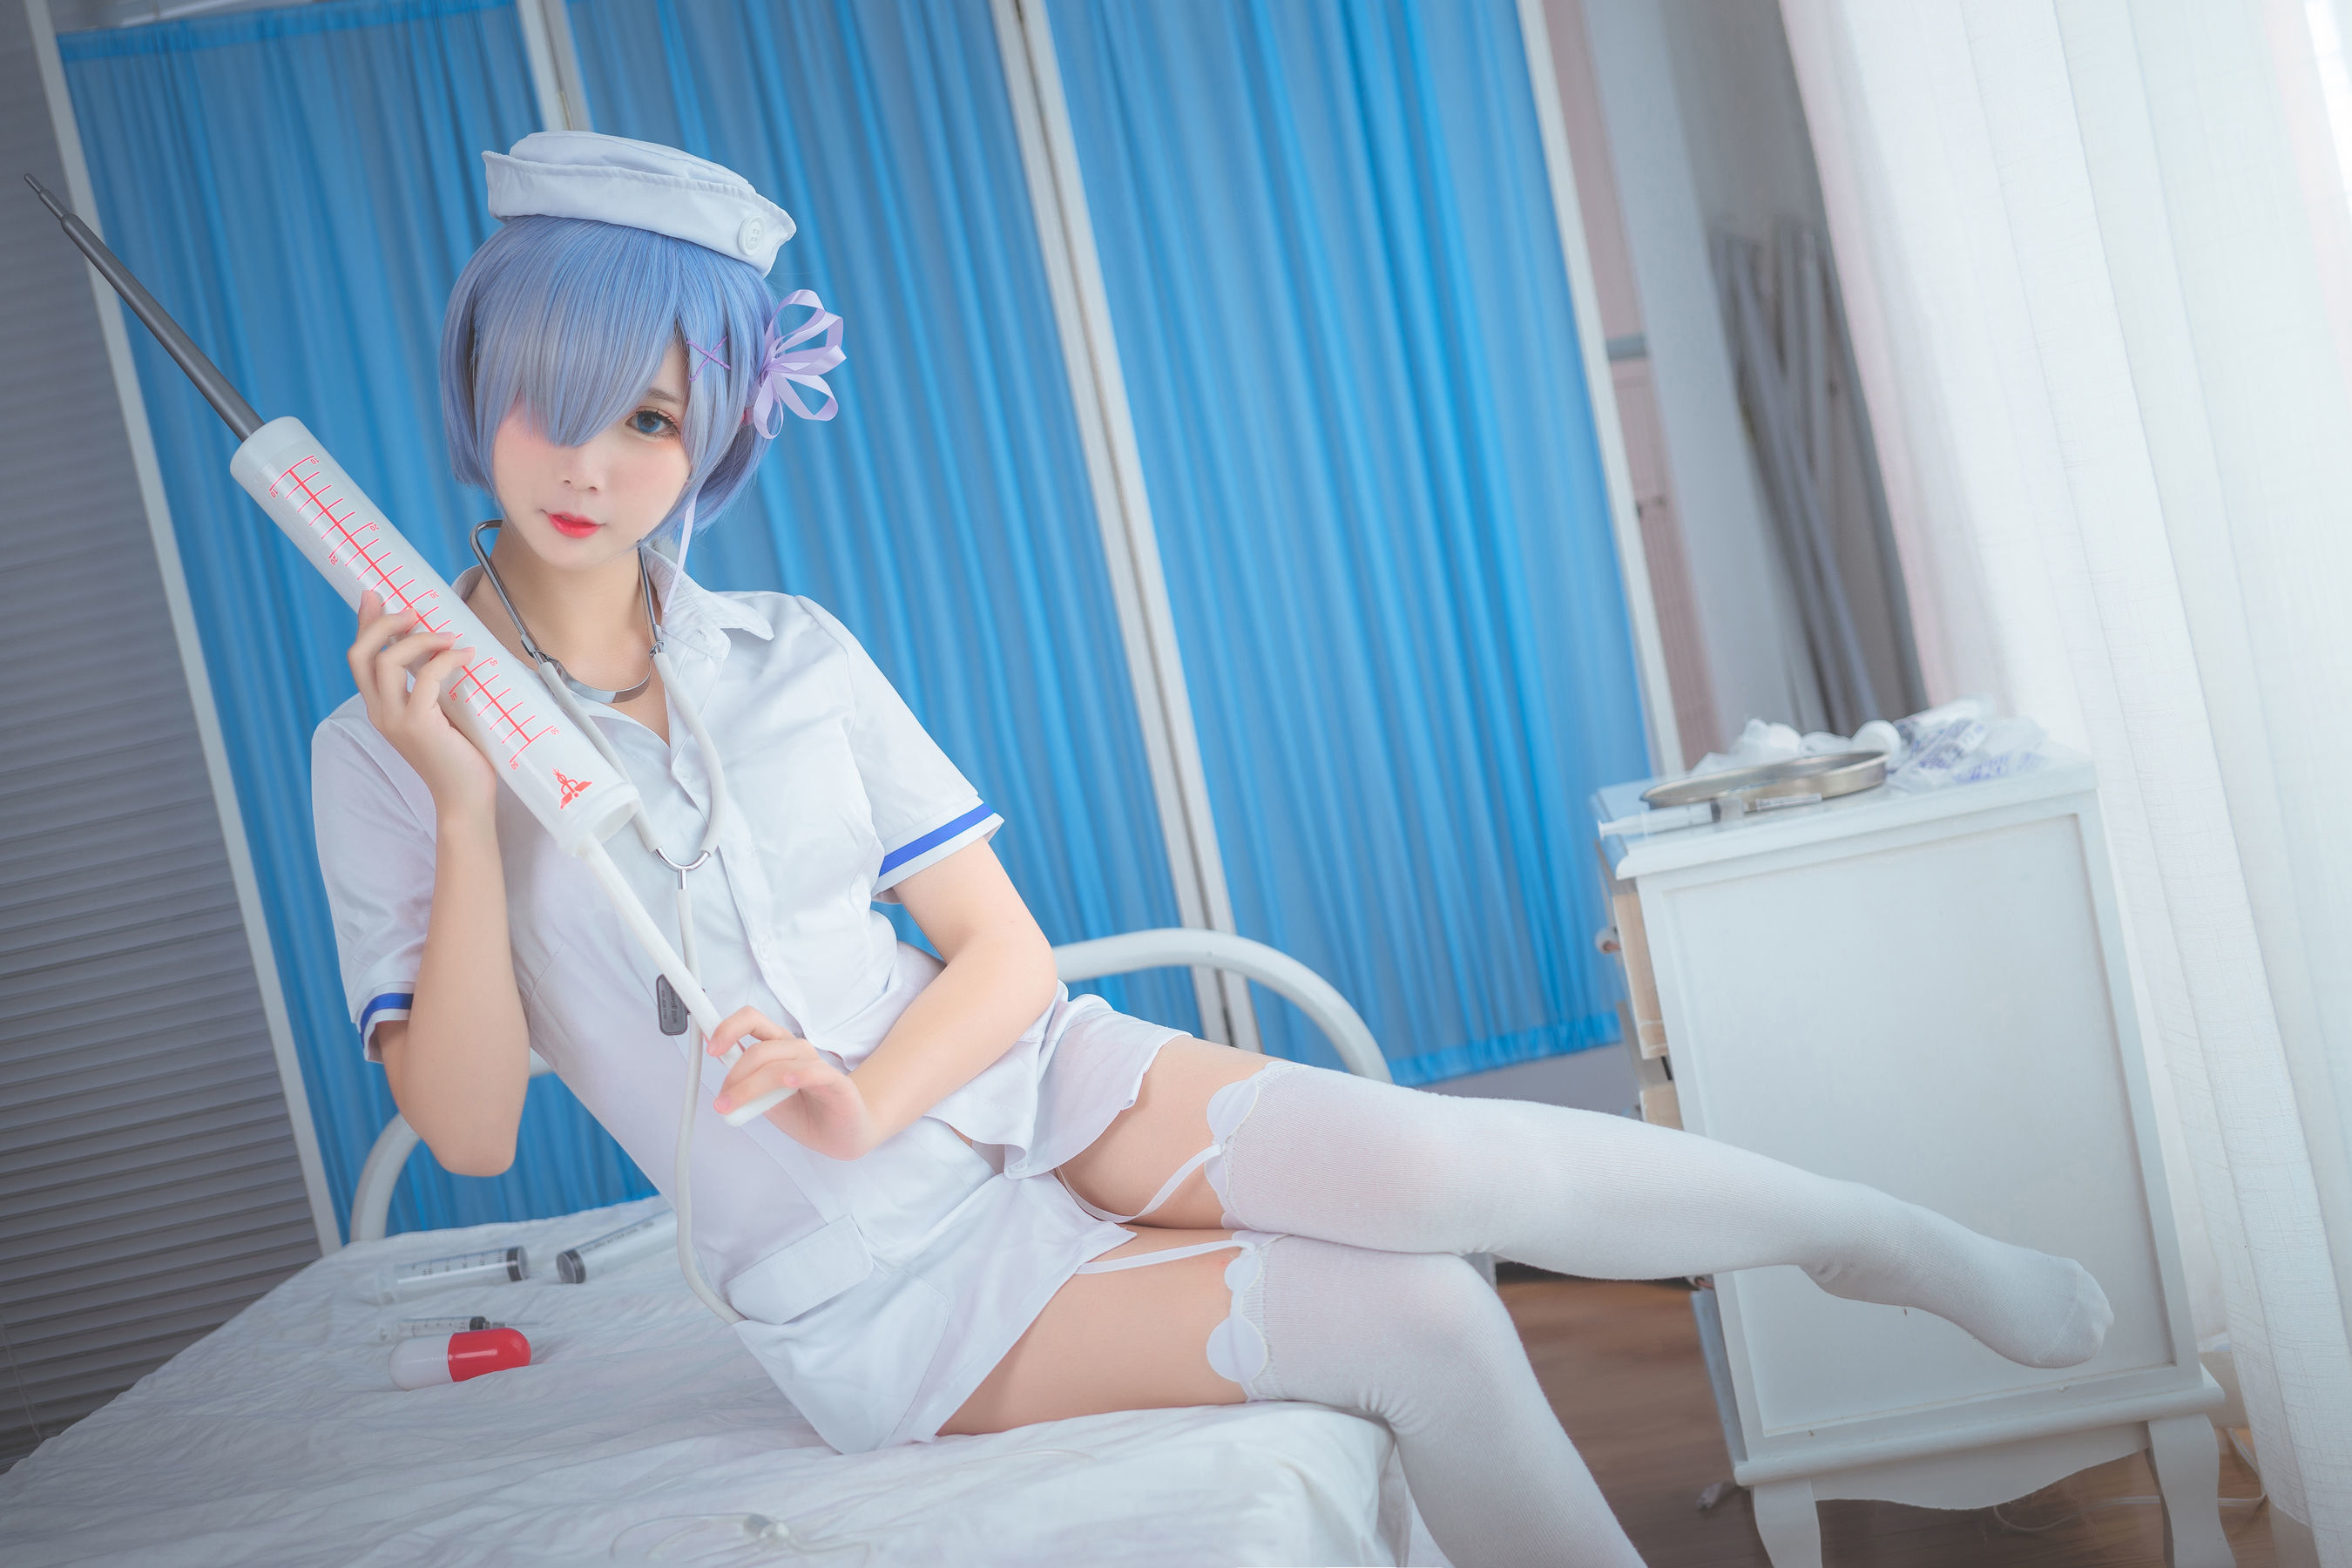 Медсестры в униформе из латекса трахаются с лысым пациентом в палате